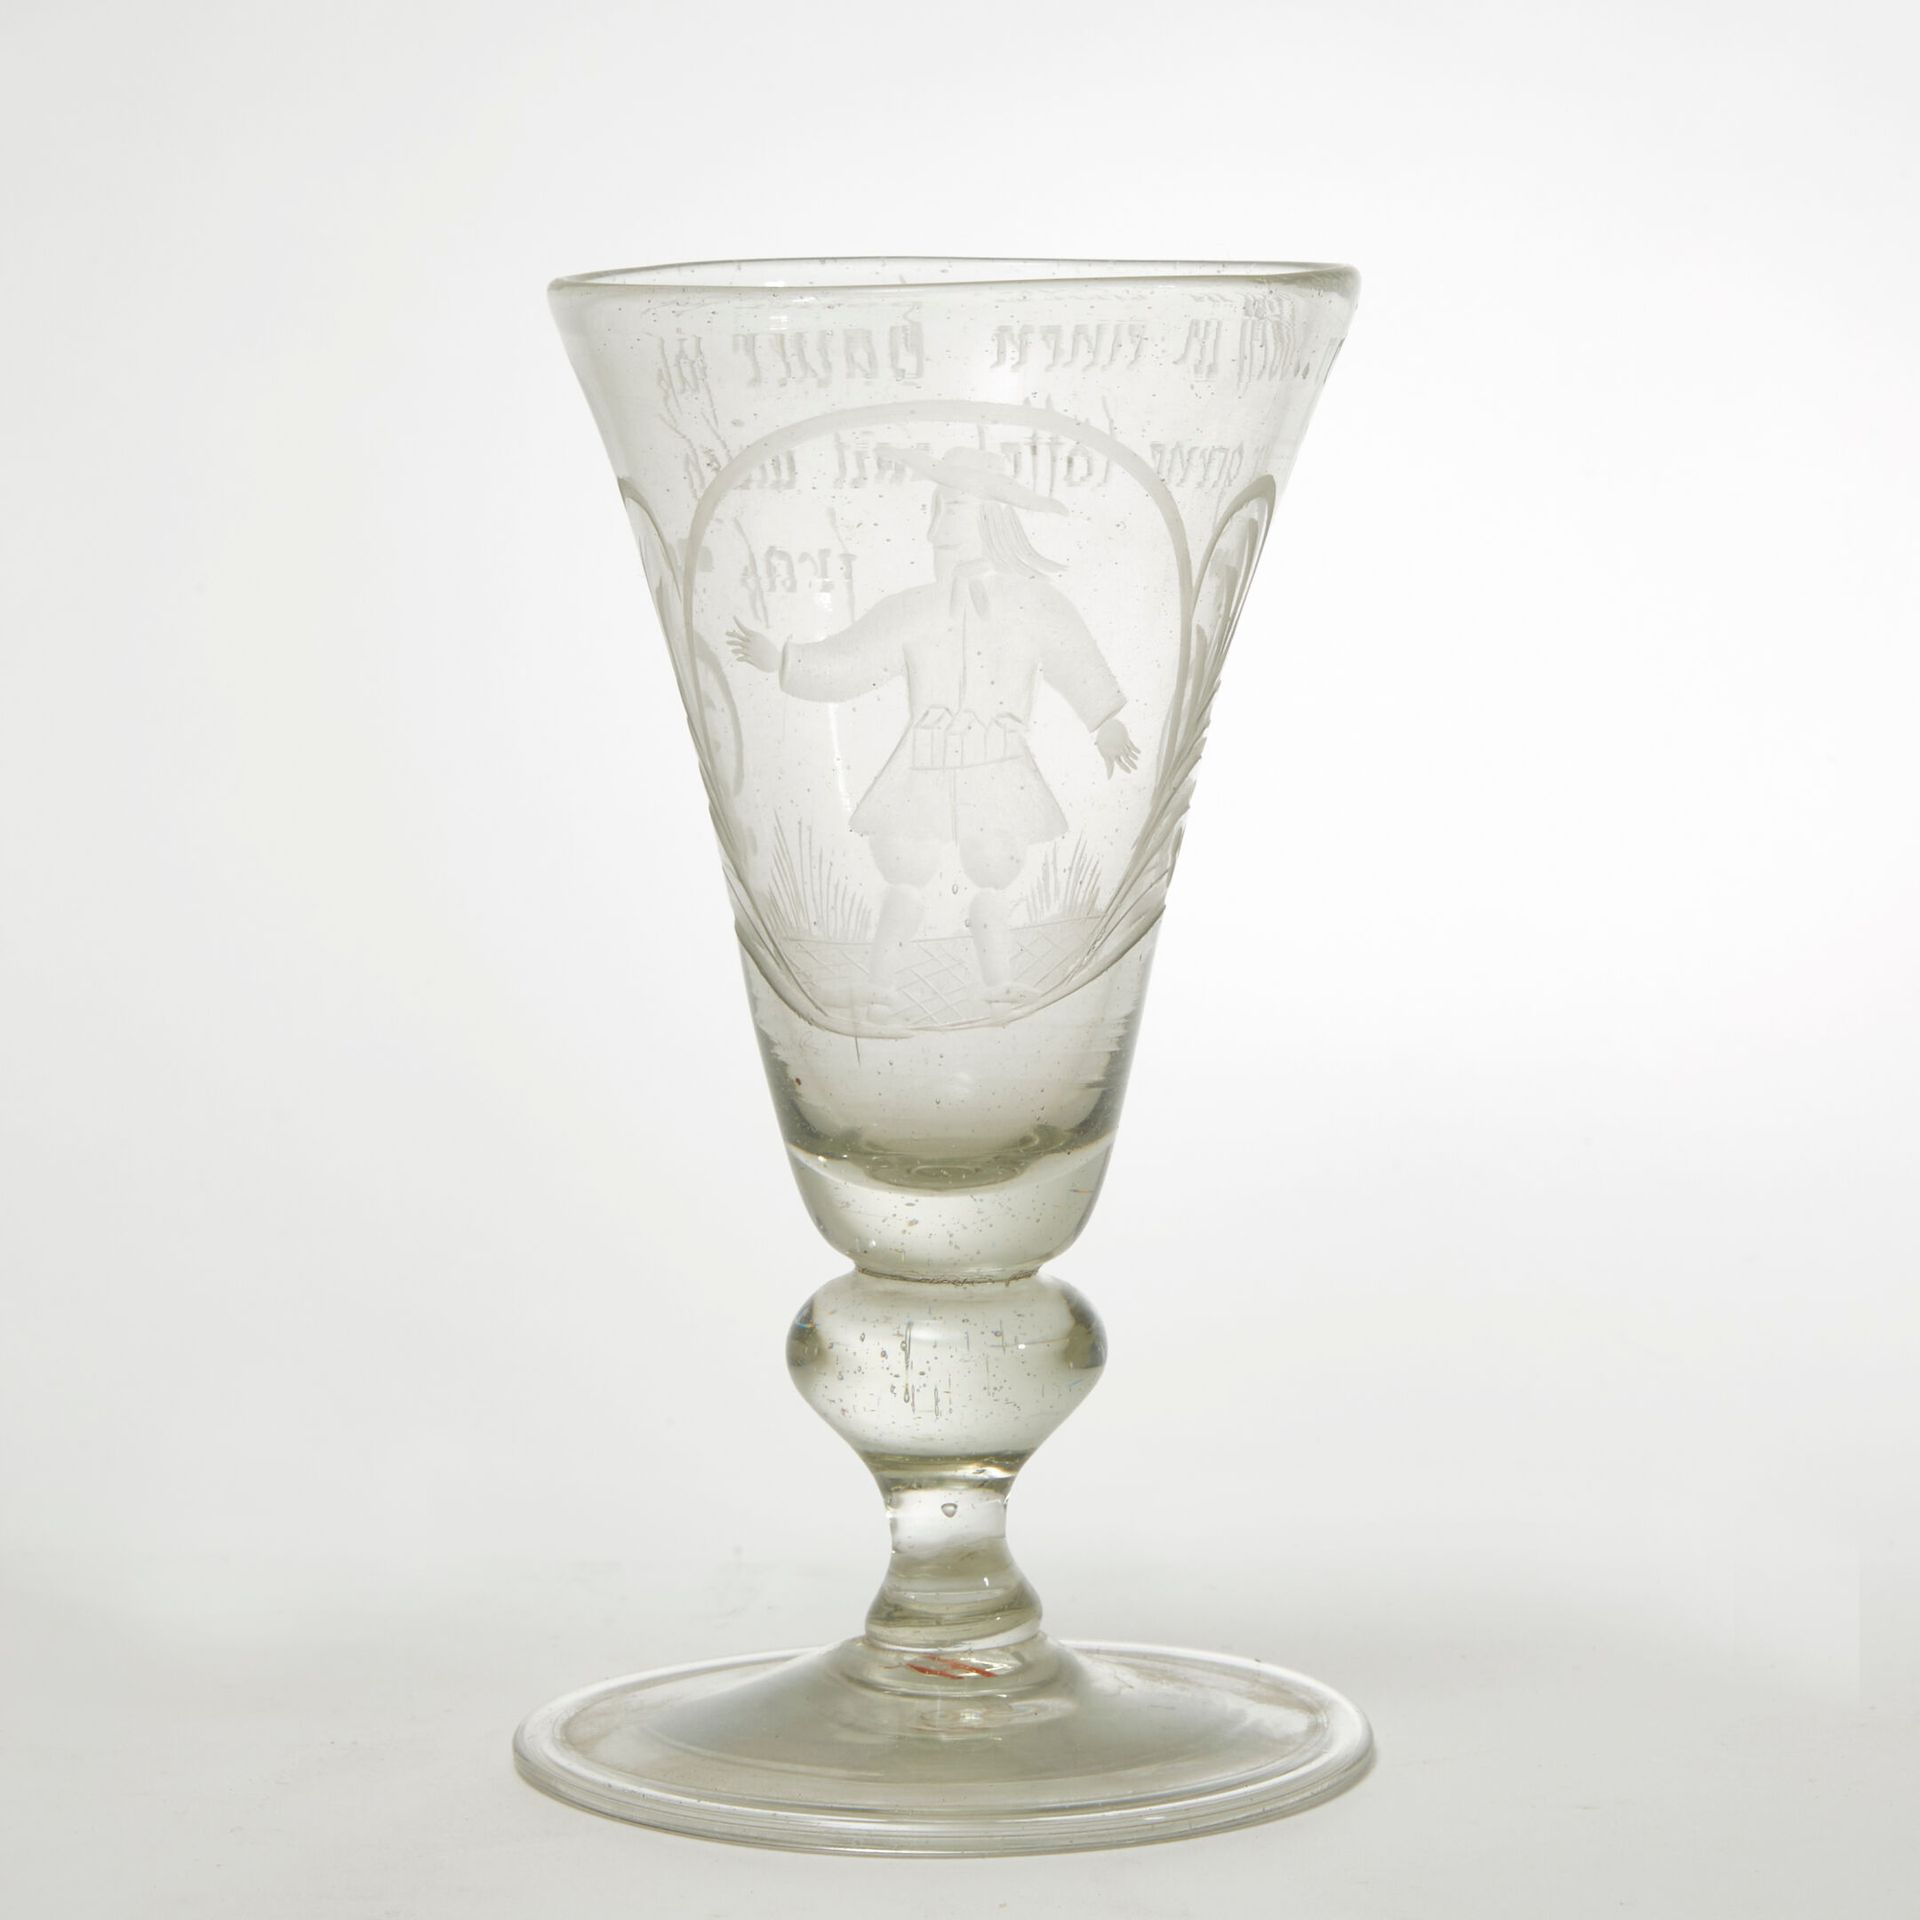 ALLEMAGNE XVIIIeme SIÈCLE 德国 十八世纪
锥形水晶酒杯，刻有人物装饰和箴言："Ein Dorff In Einen Bauer Fak&hellip;